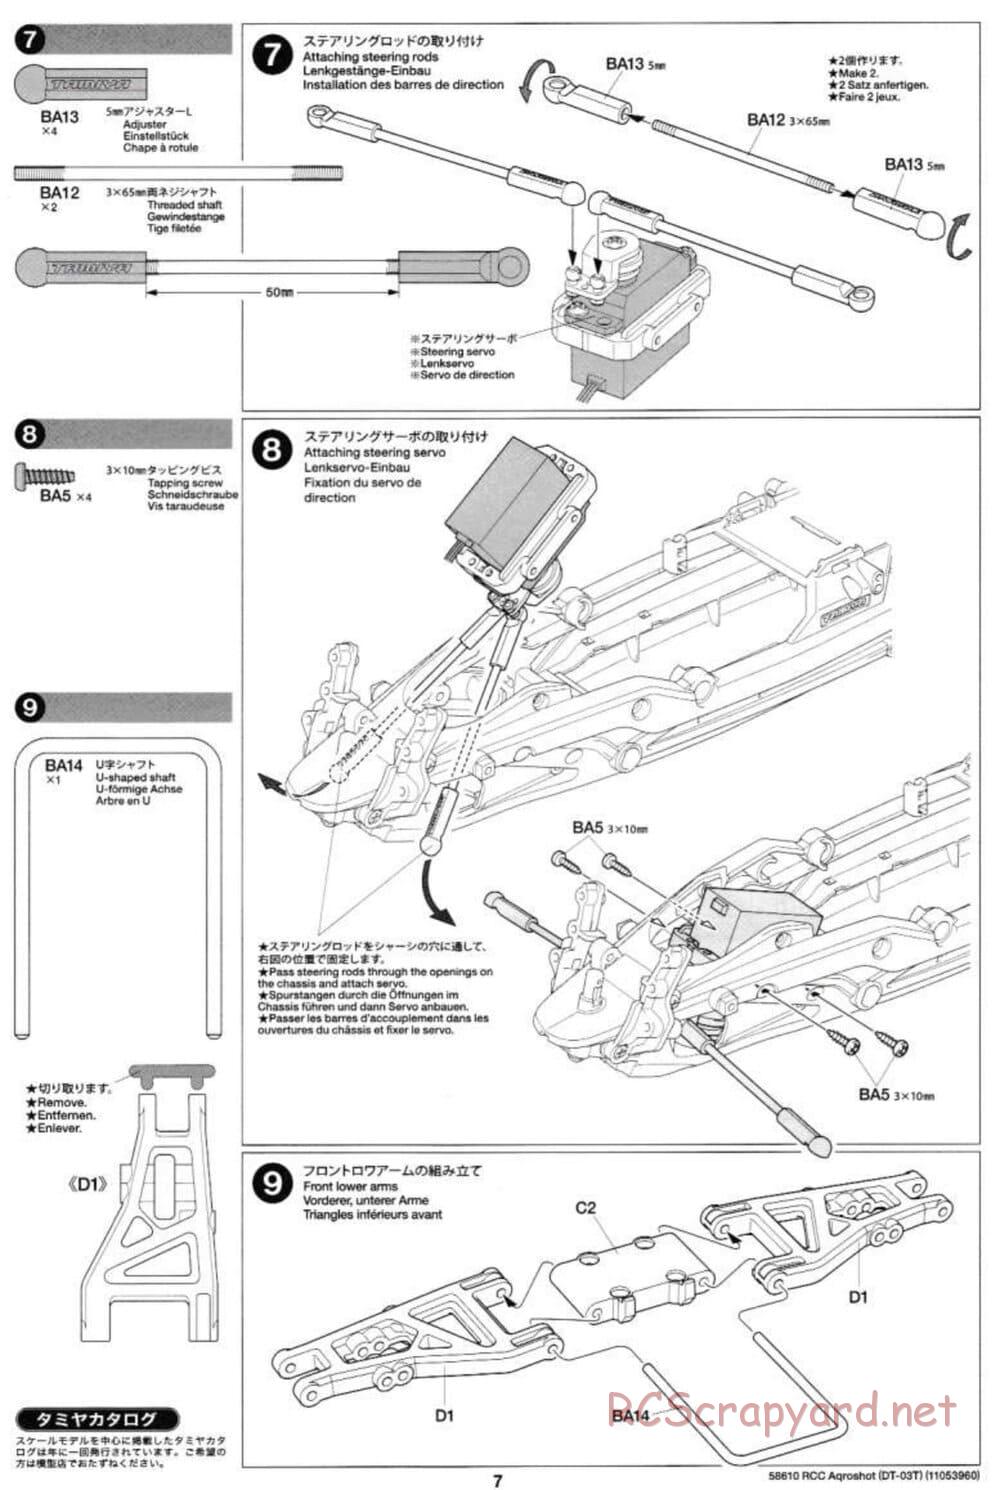 Tamiya - Aqroshot Chassis - Manual - Page 7